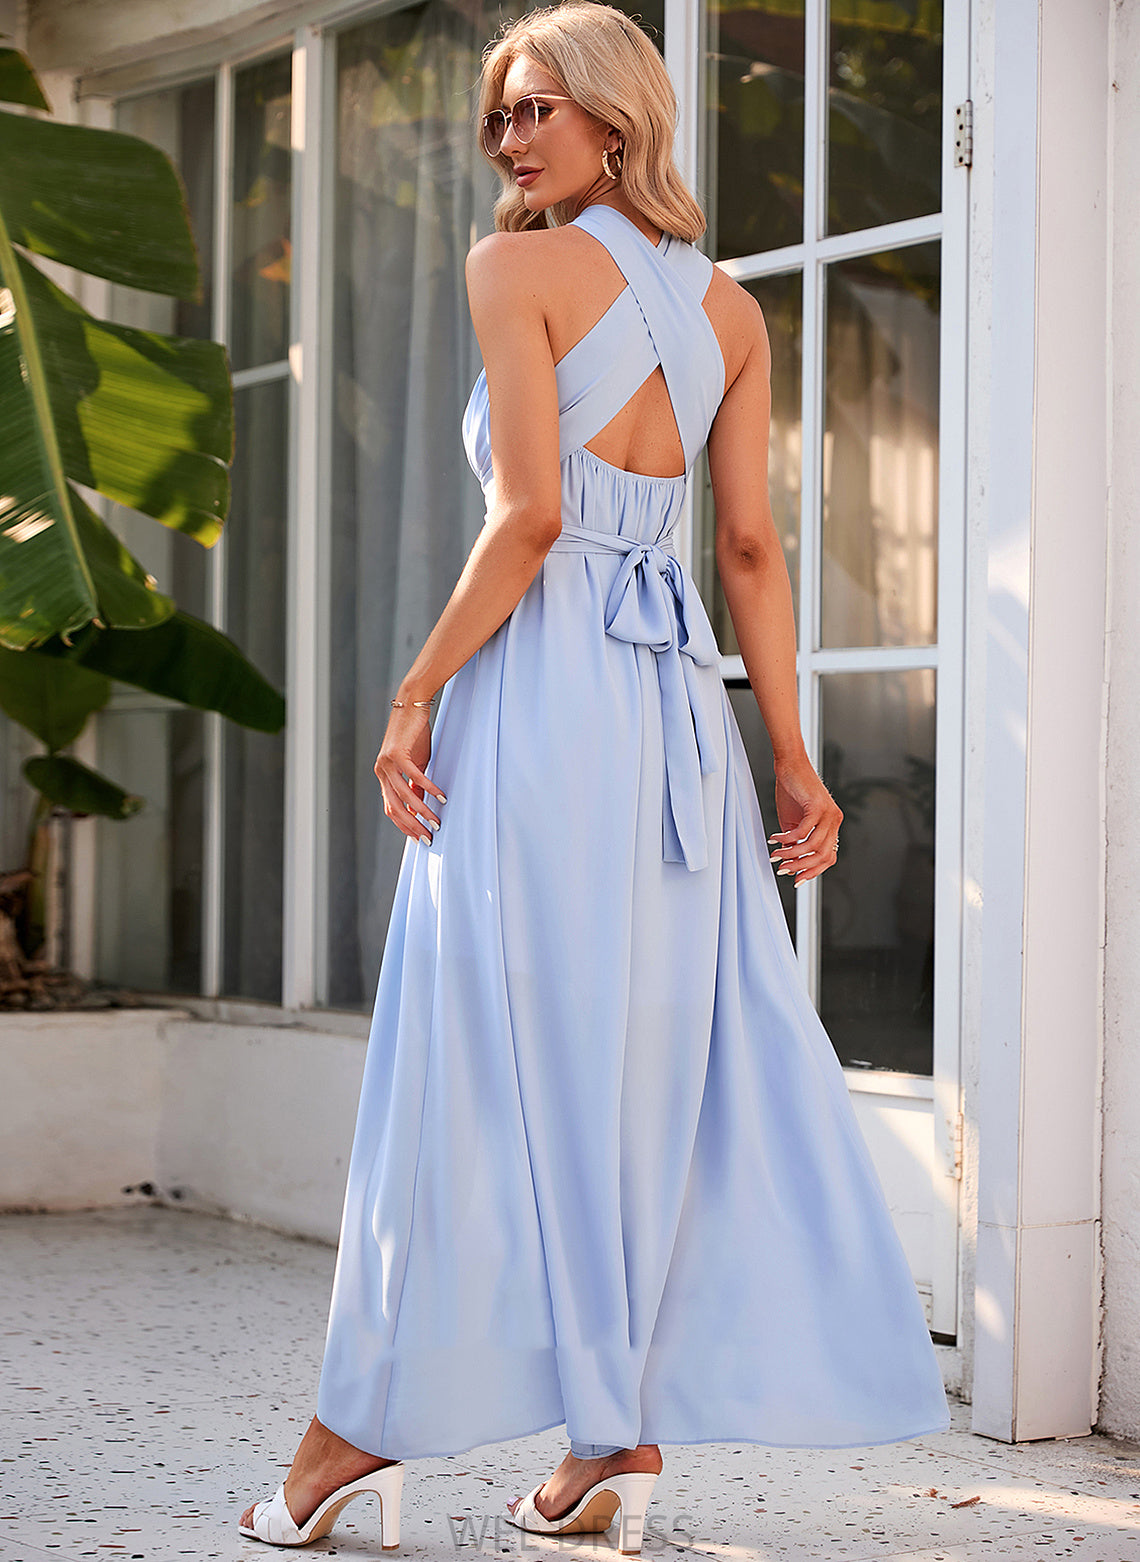 Halter Fabric Silhouette A-Line Straps Ankle-Length Neckline Length Aurora One Shoulder A-Line/Princess Sleeveless Bridesmaid Dresses